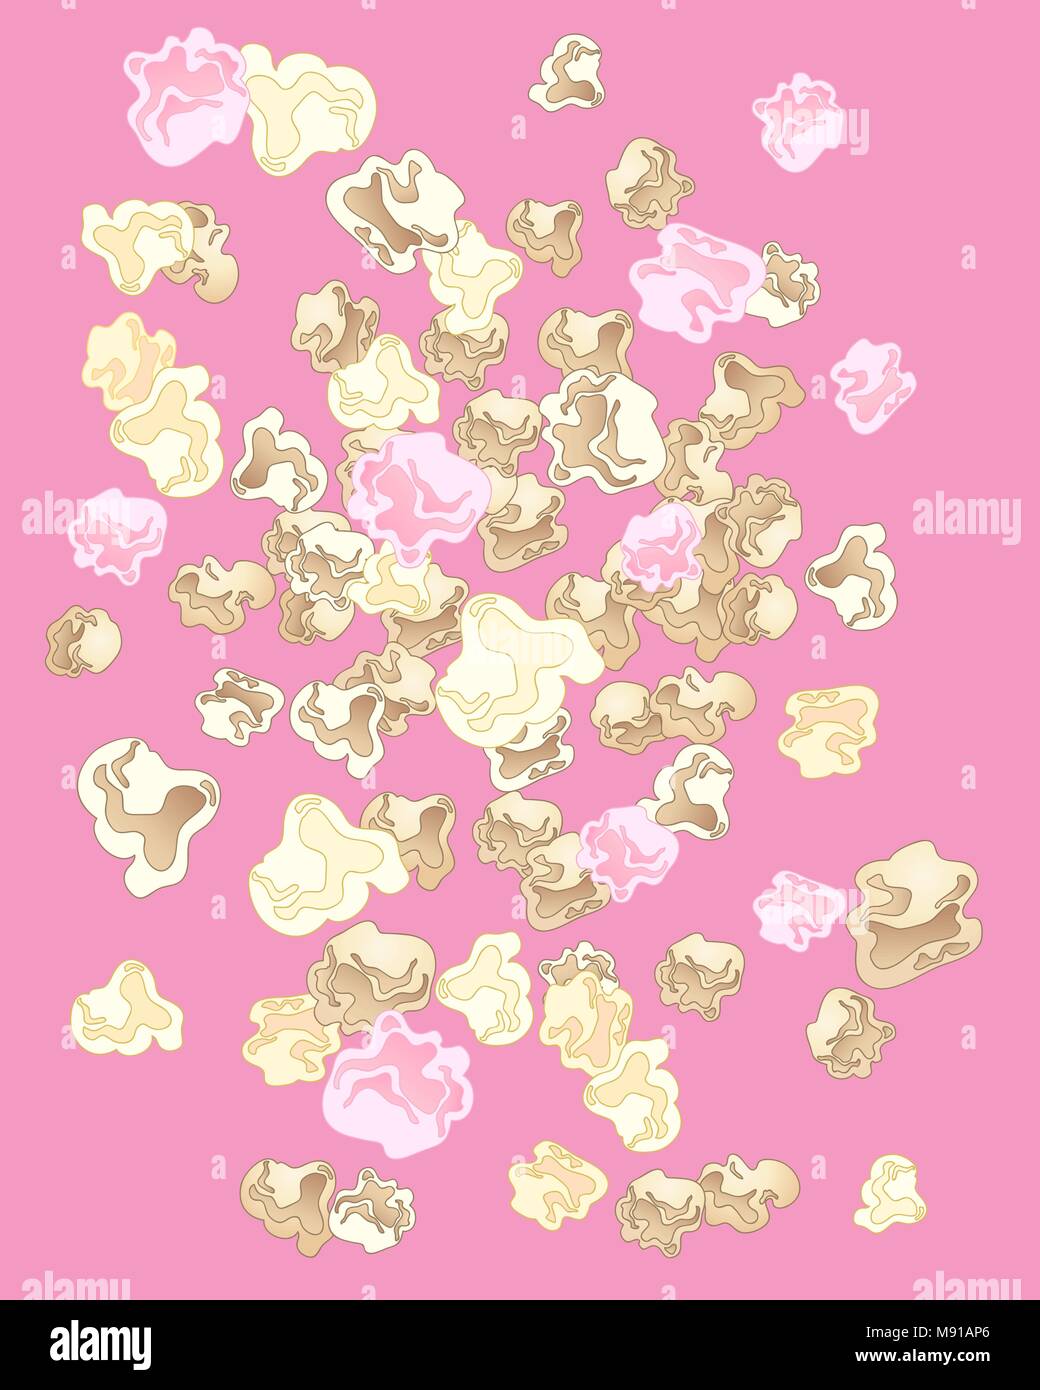 Un vecteur illustration en eps 10 format d'un délicieux popcorn image de fond sur un fond rose Illustration de Vecteur